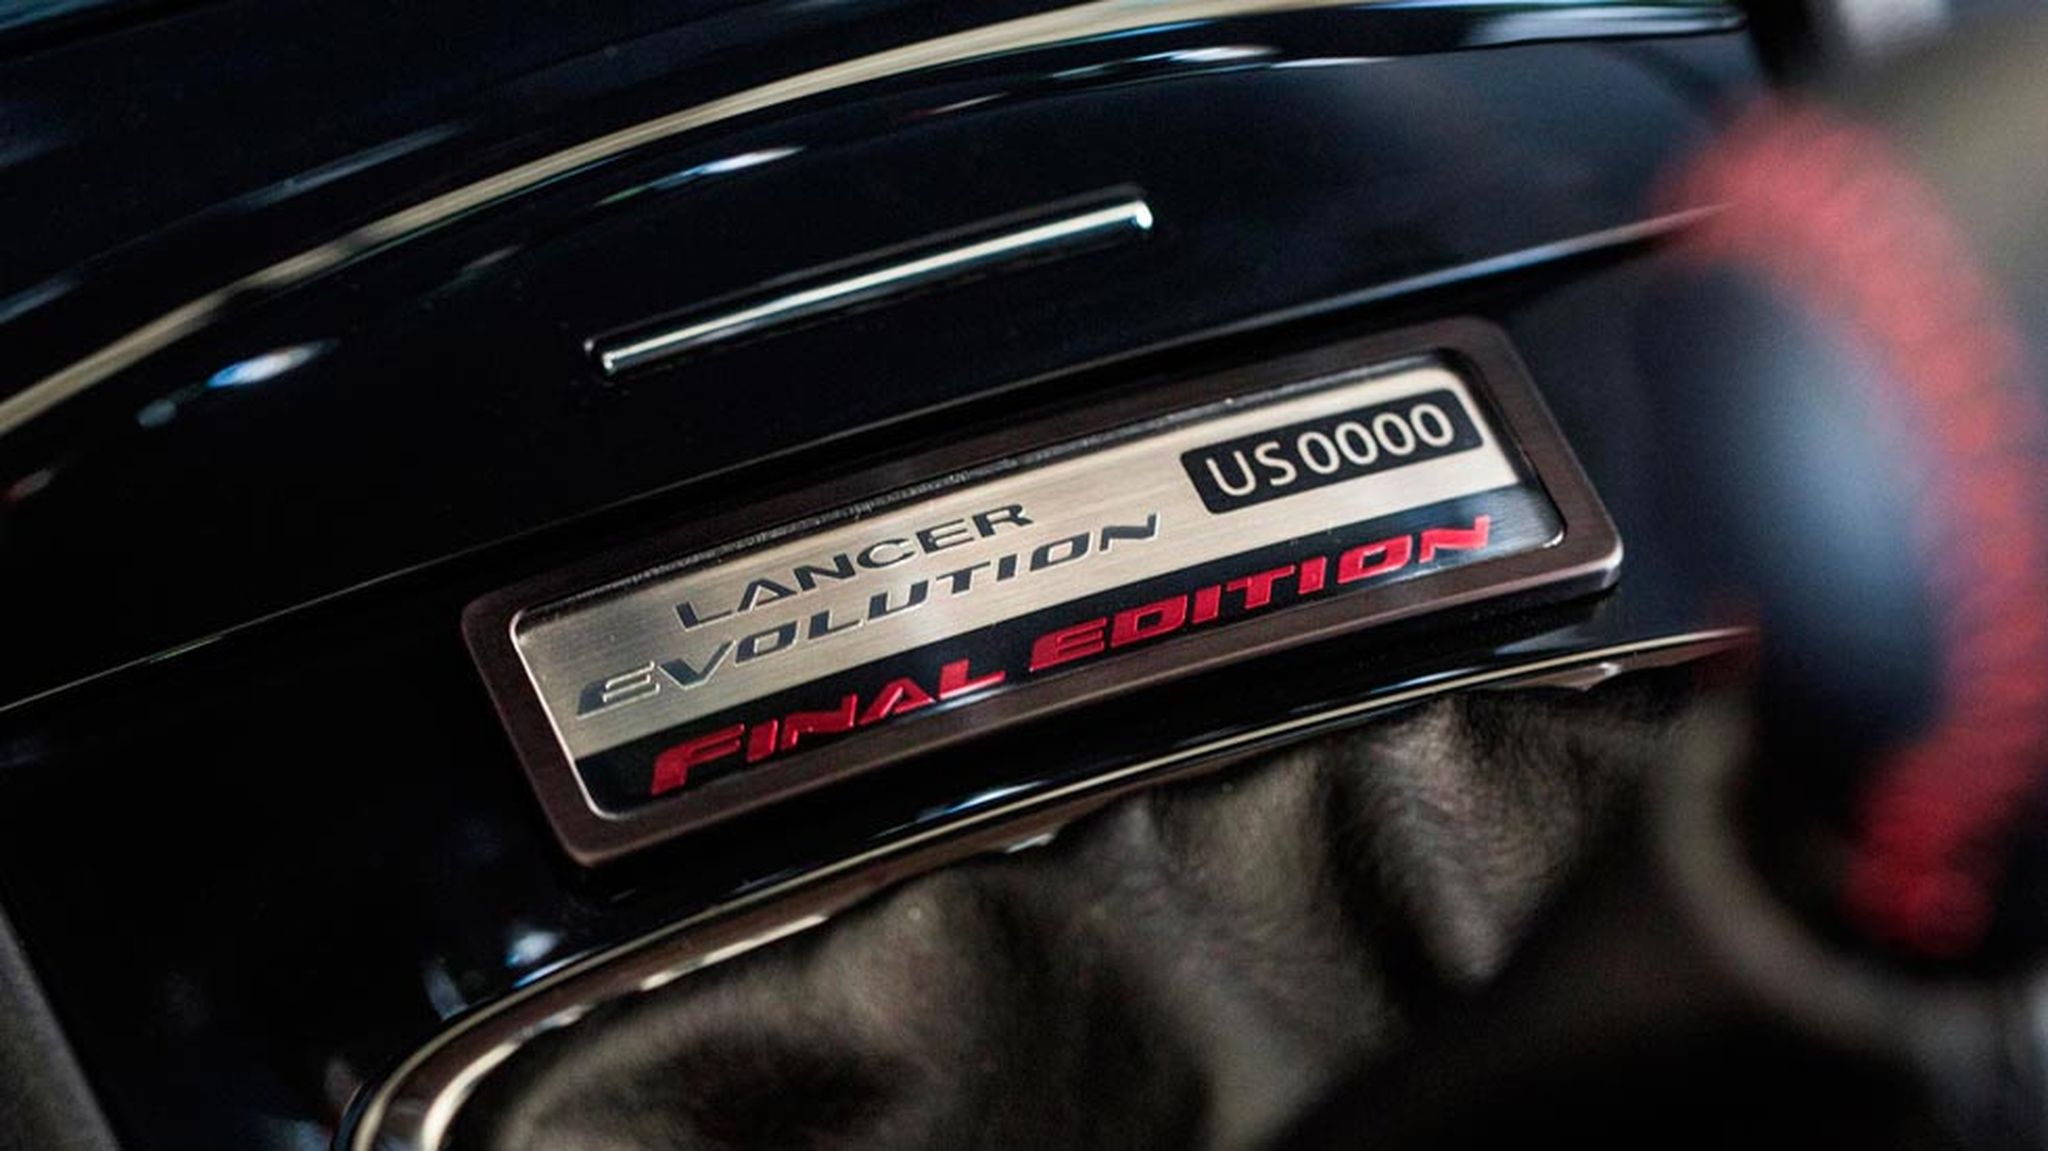 Mitsubishi Lancer Evo Final Edition placa